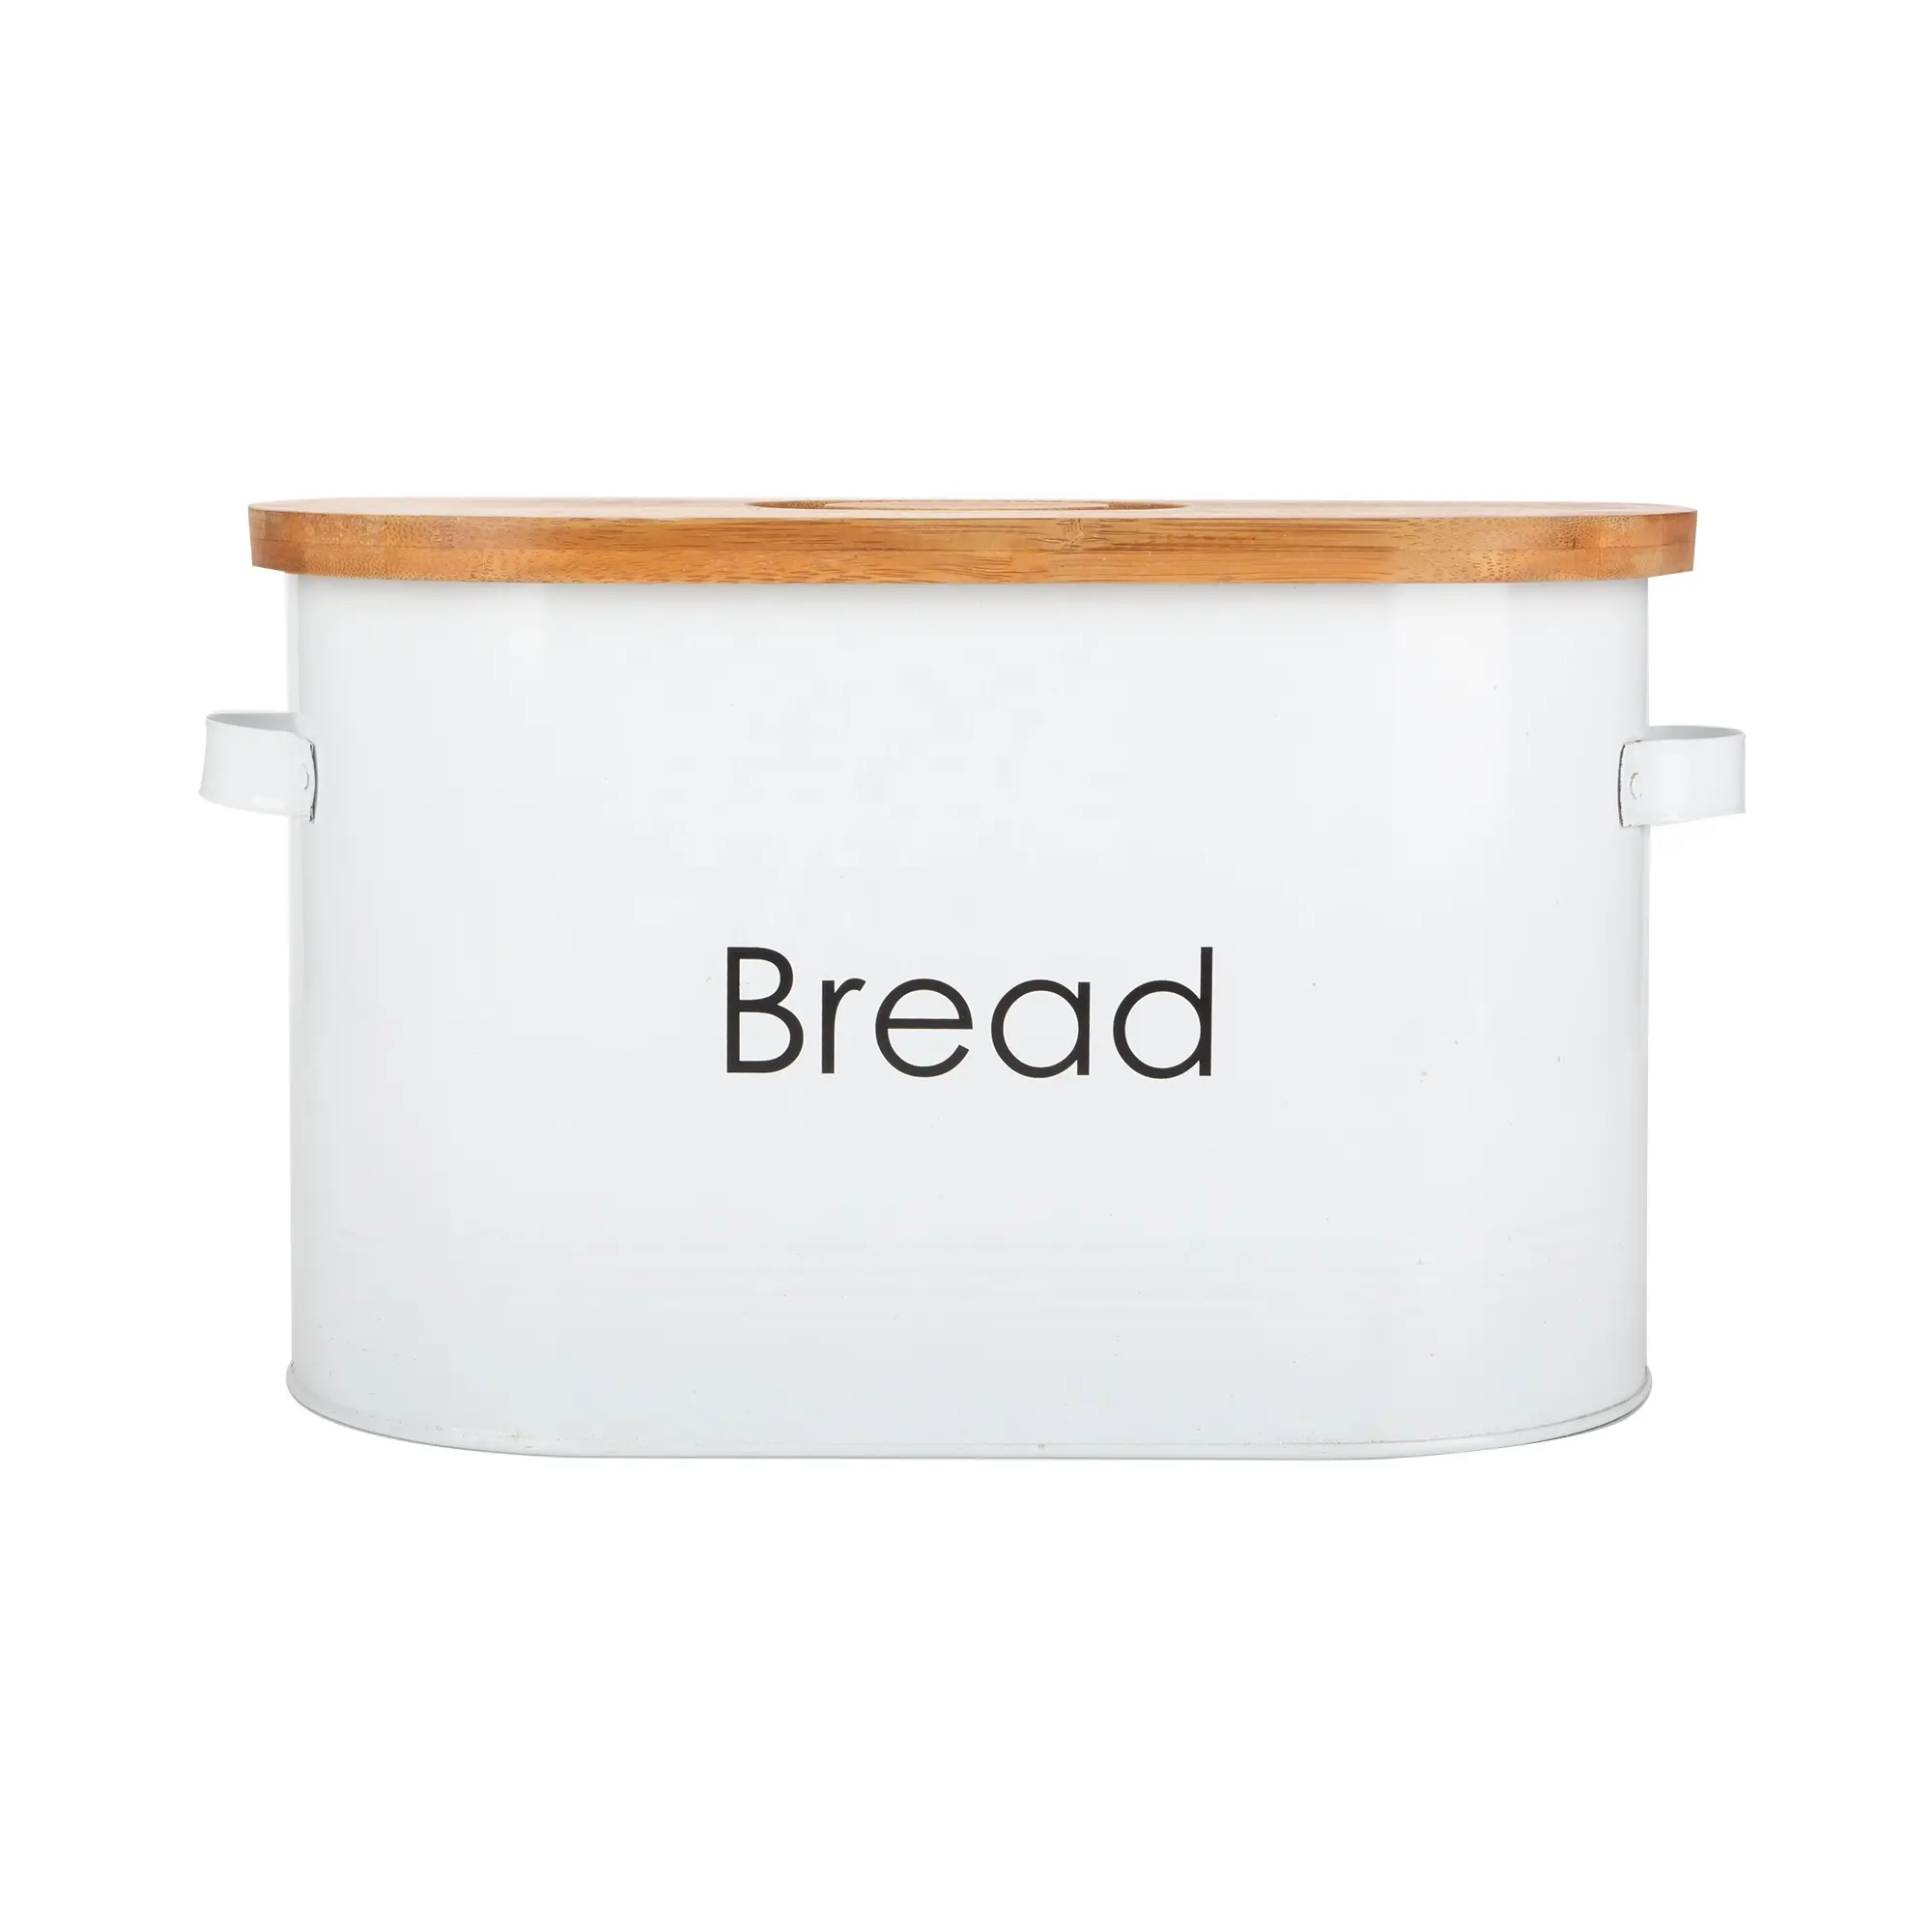 Grande moderno de Metal para el pan Bin con tapa de madera para la cocina caja de pan